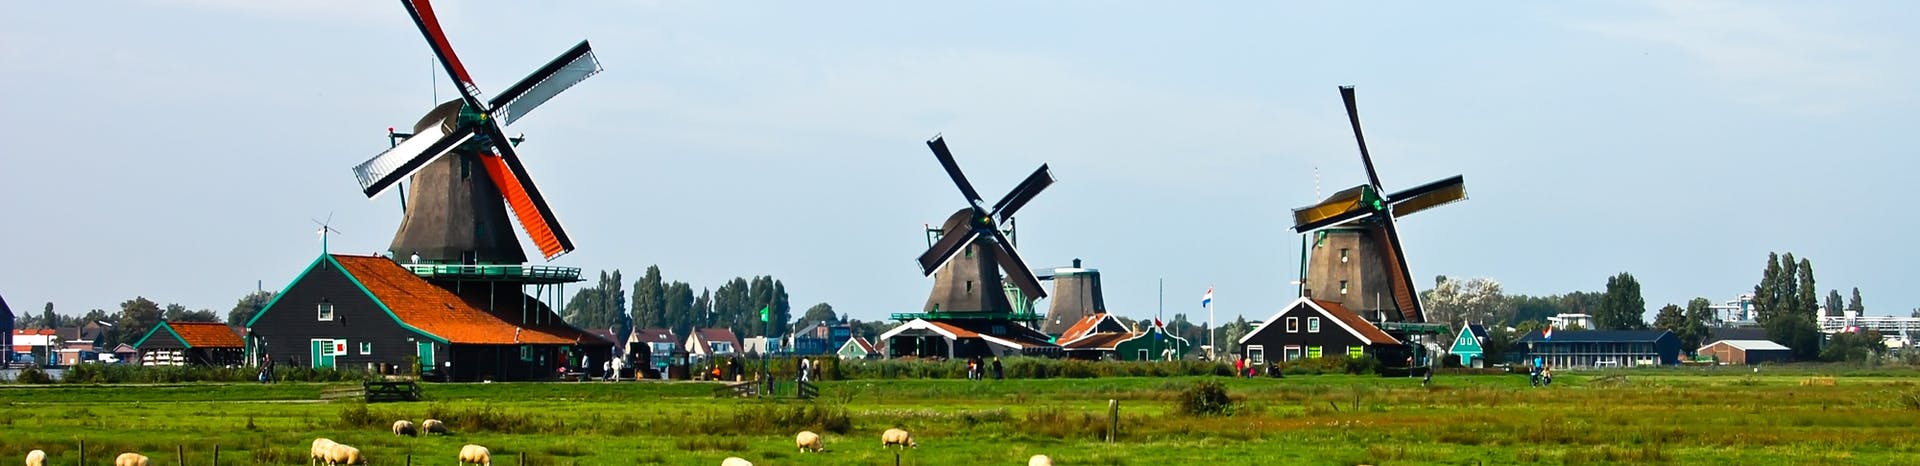 Picture of Deventer